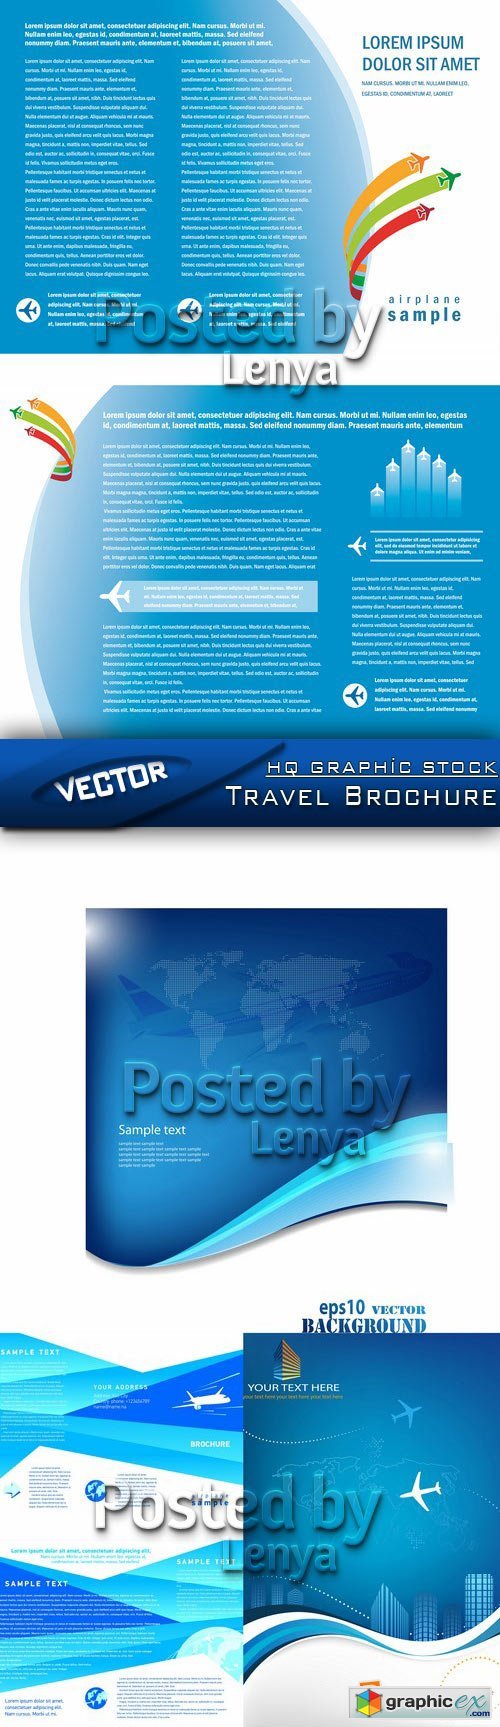 Stock Vector - Travel Brochure